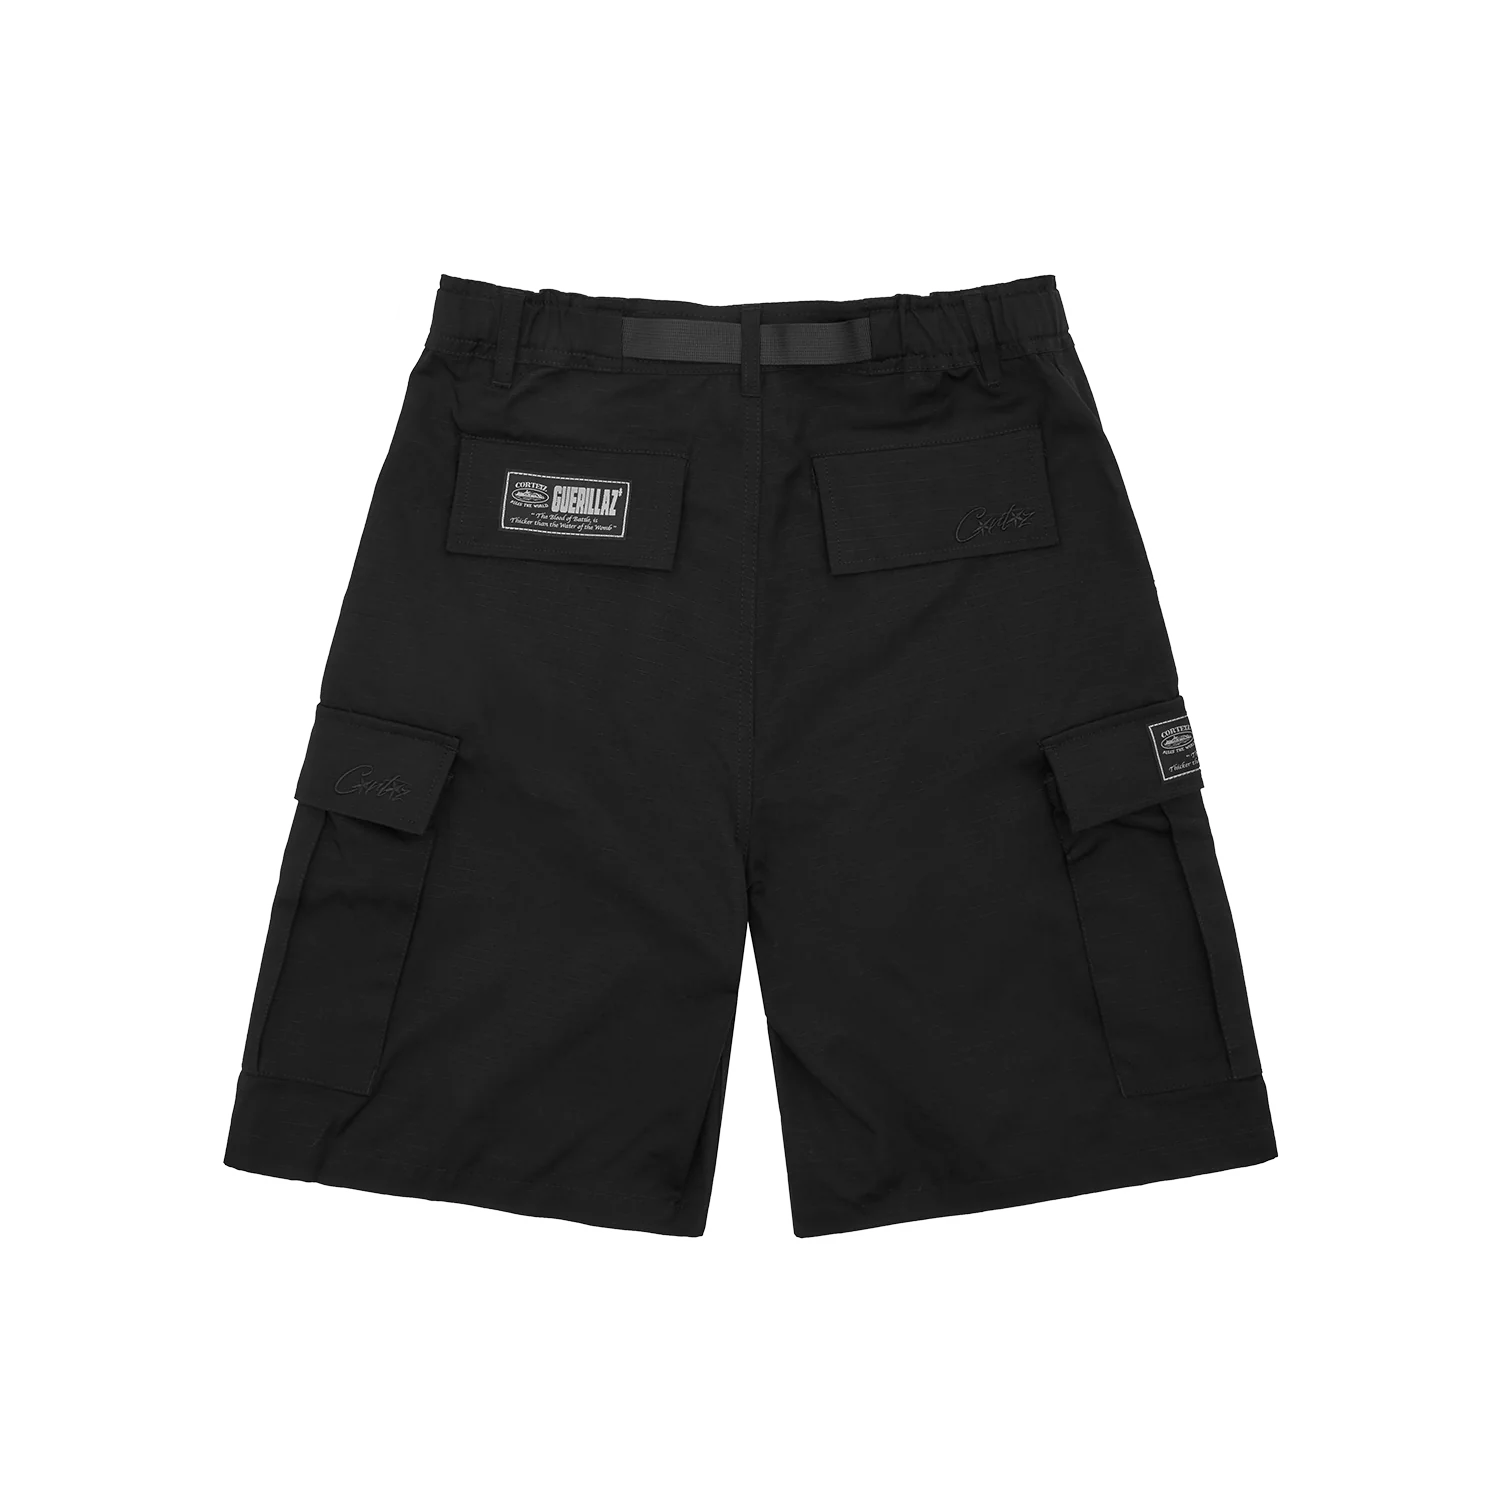 Blackout OG Cargos shorts